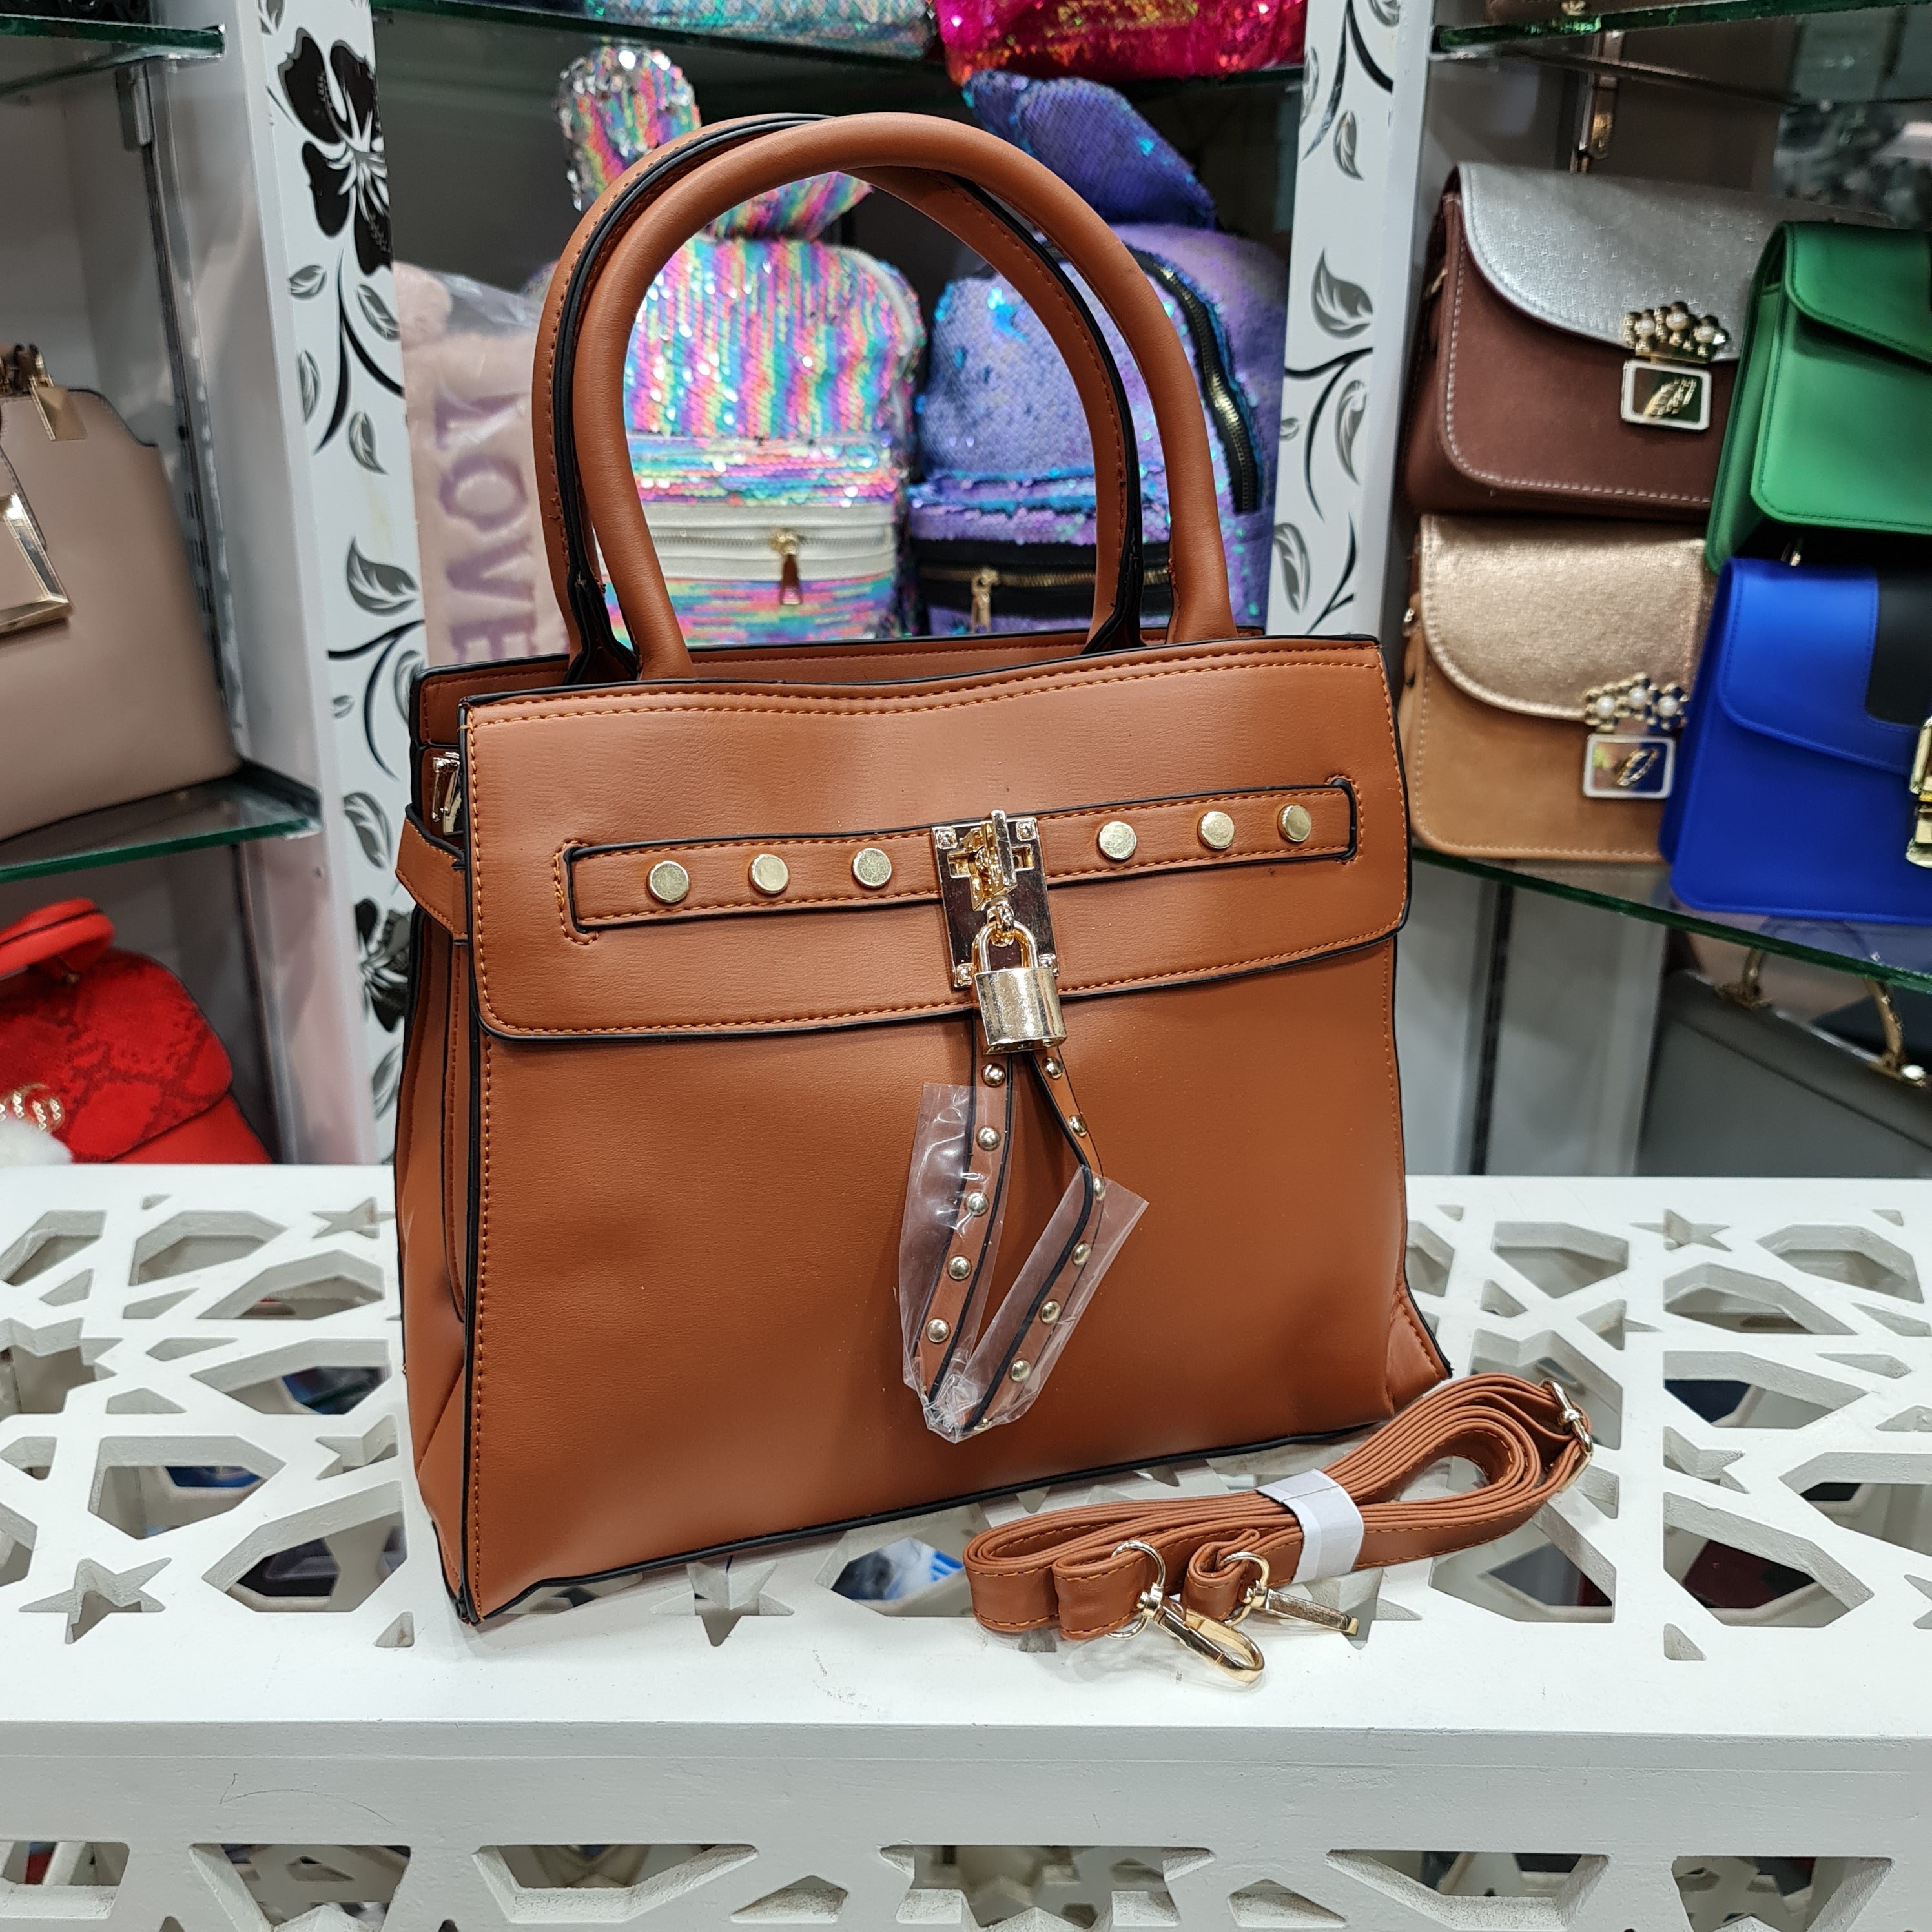 Women's Handbags - Maha fashions -  women's handbags